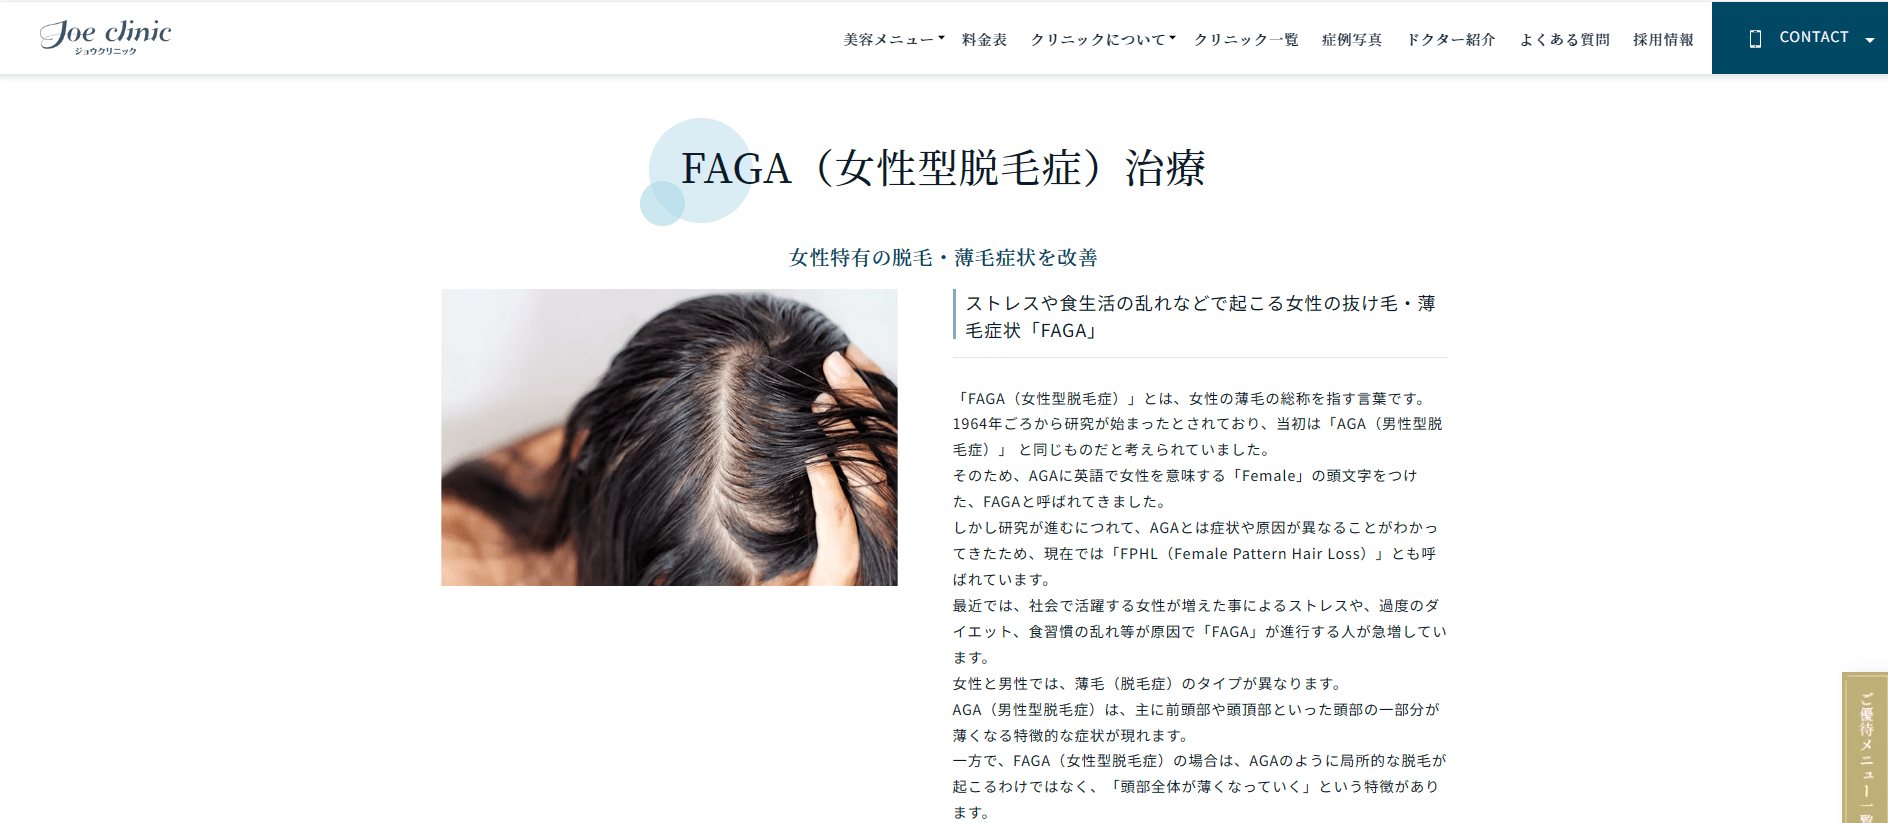 大阪府で評判のFAGA（女性薄毛治療）におすすめのクリニック10選 ジョウクリニック 大阪院